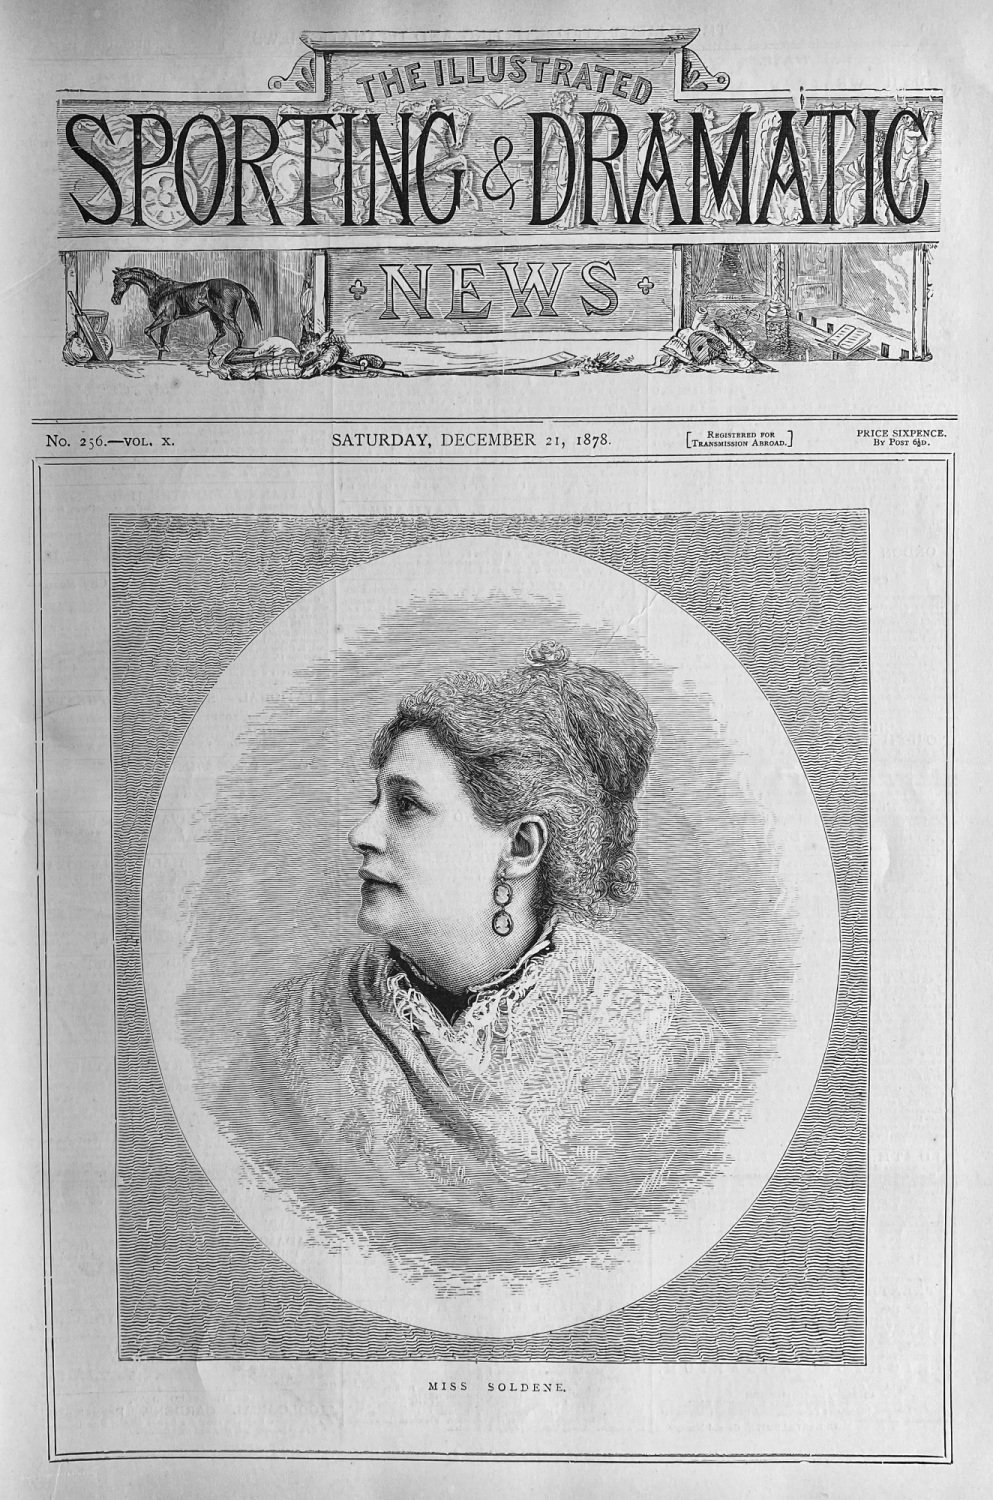 Miss  Soldene.  (Actress).  1878.